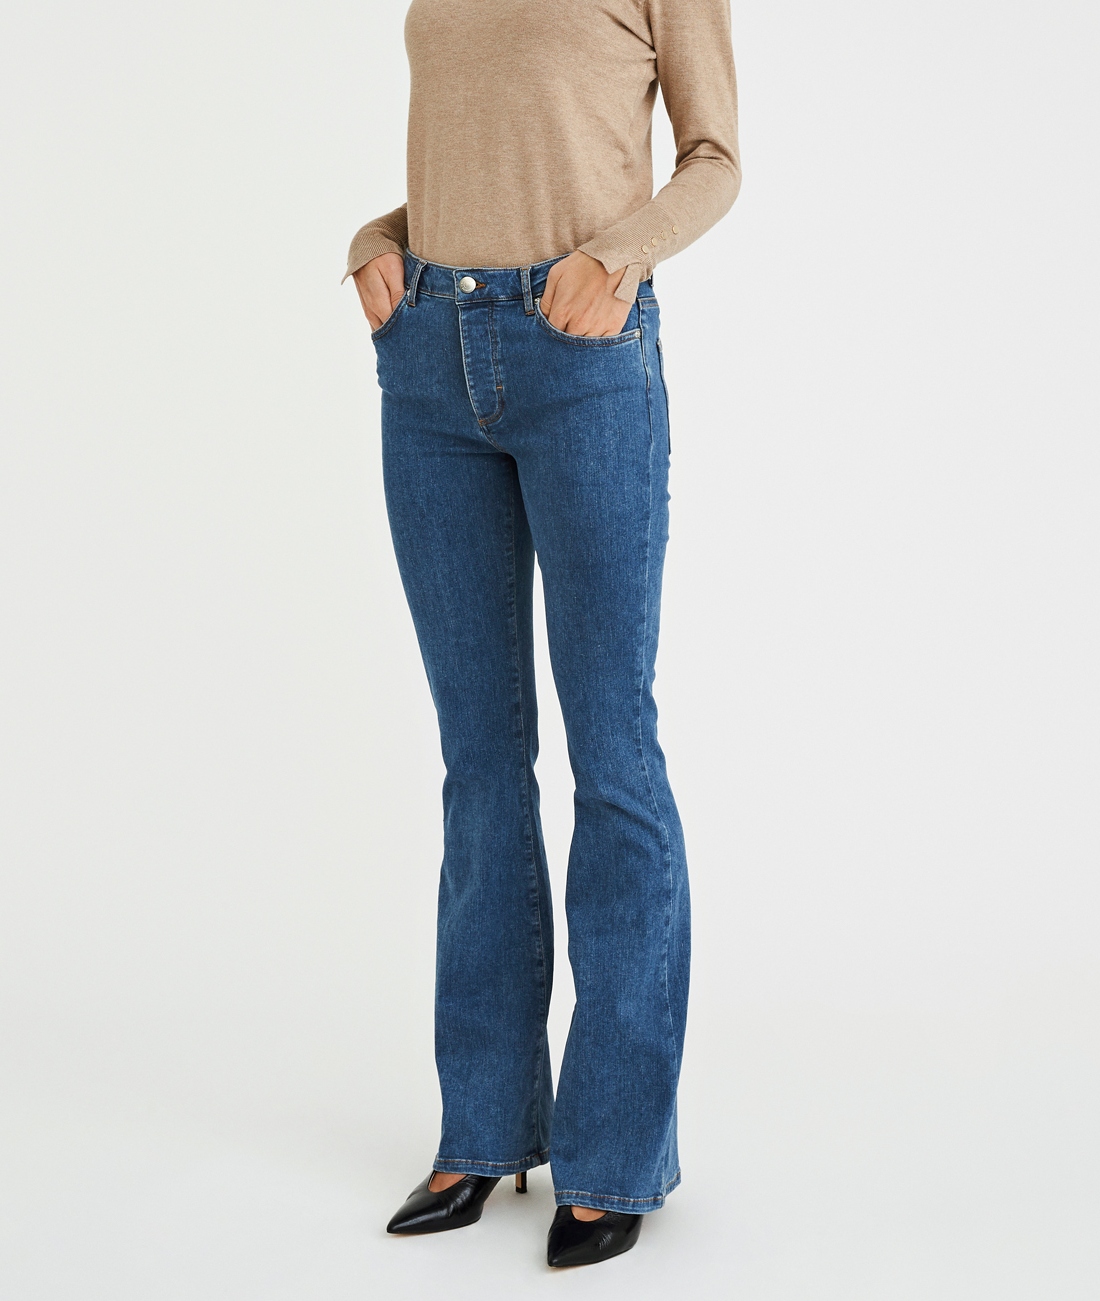 FIVEUNITS Naomi Mid Blue Jeans